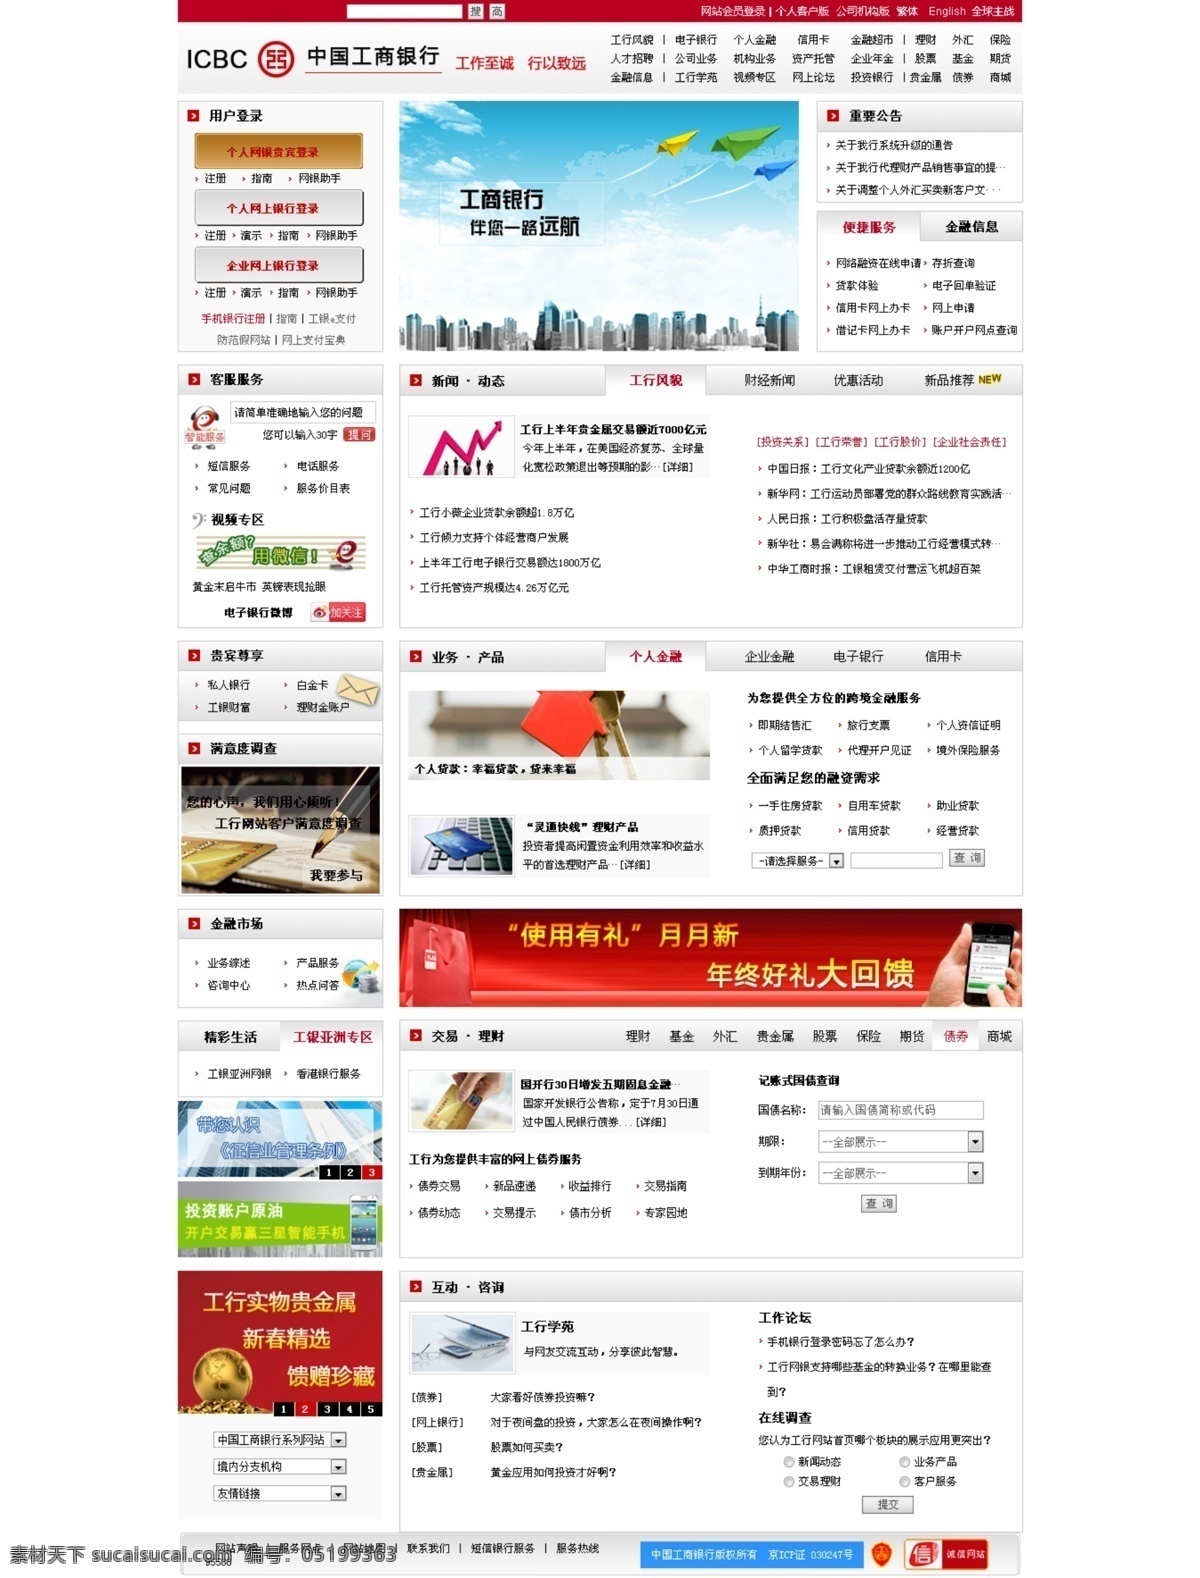 中国工商银行 网页 银行网页 中文模板 工商银行网页 工商网站 红色系网页 web 界面设计 网页素材 其他网页素材